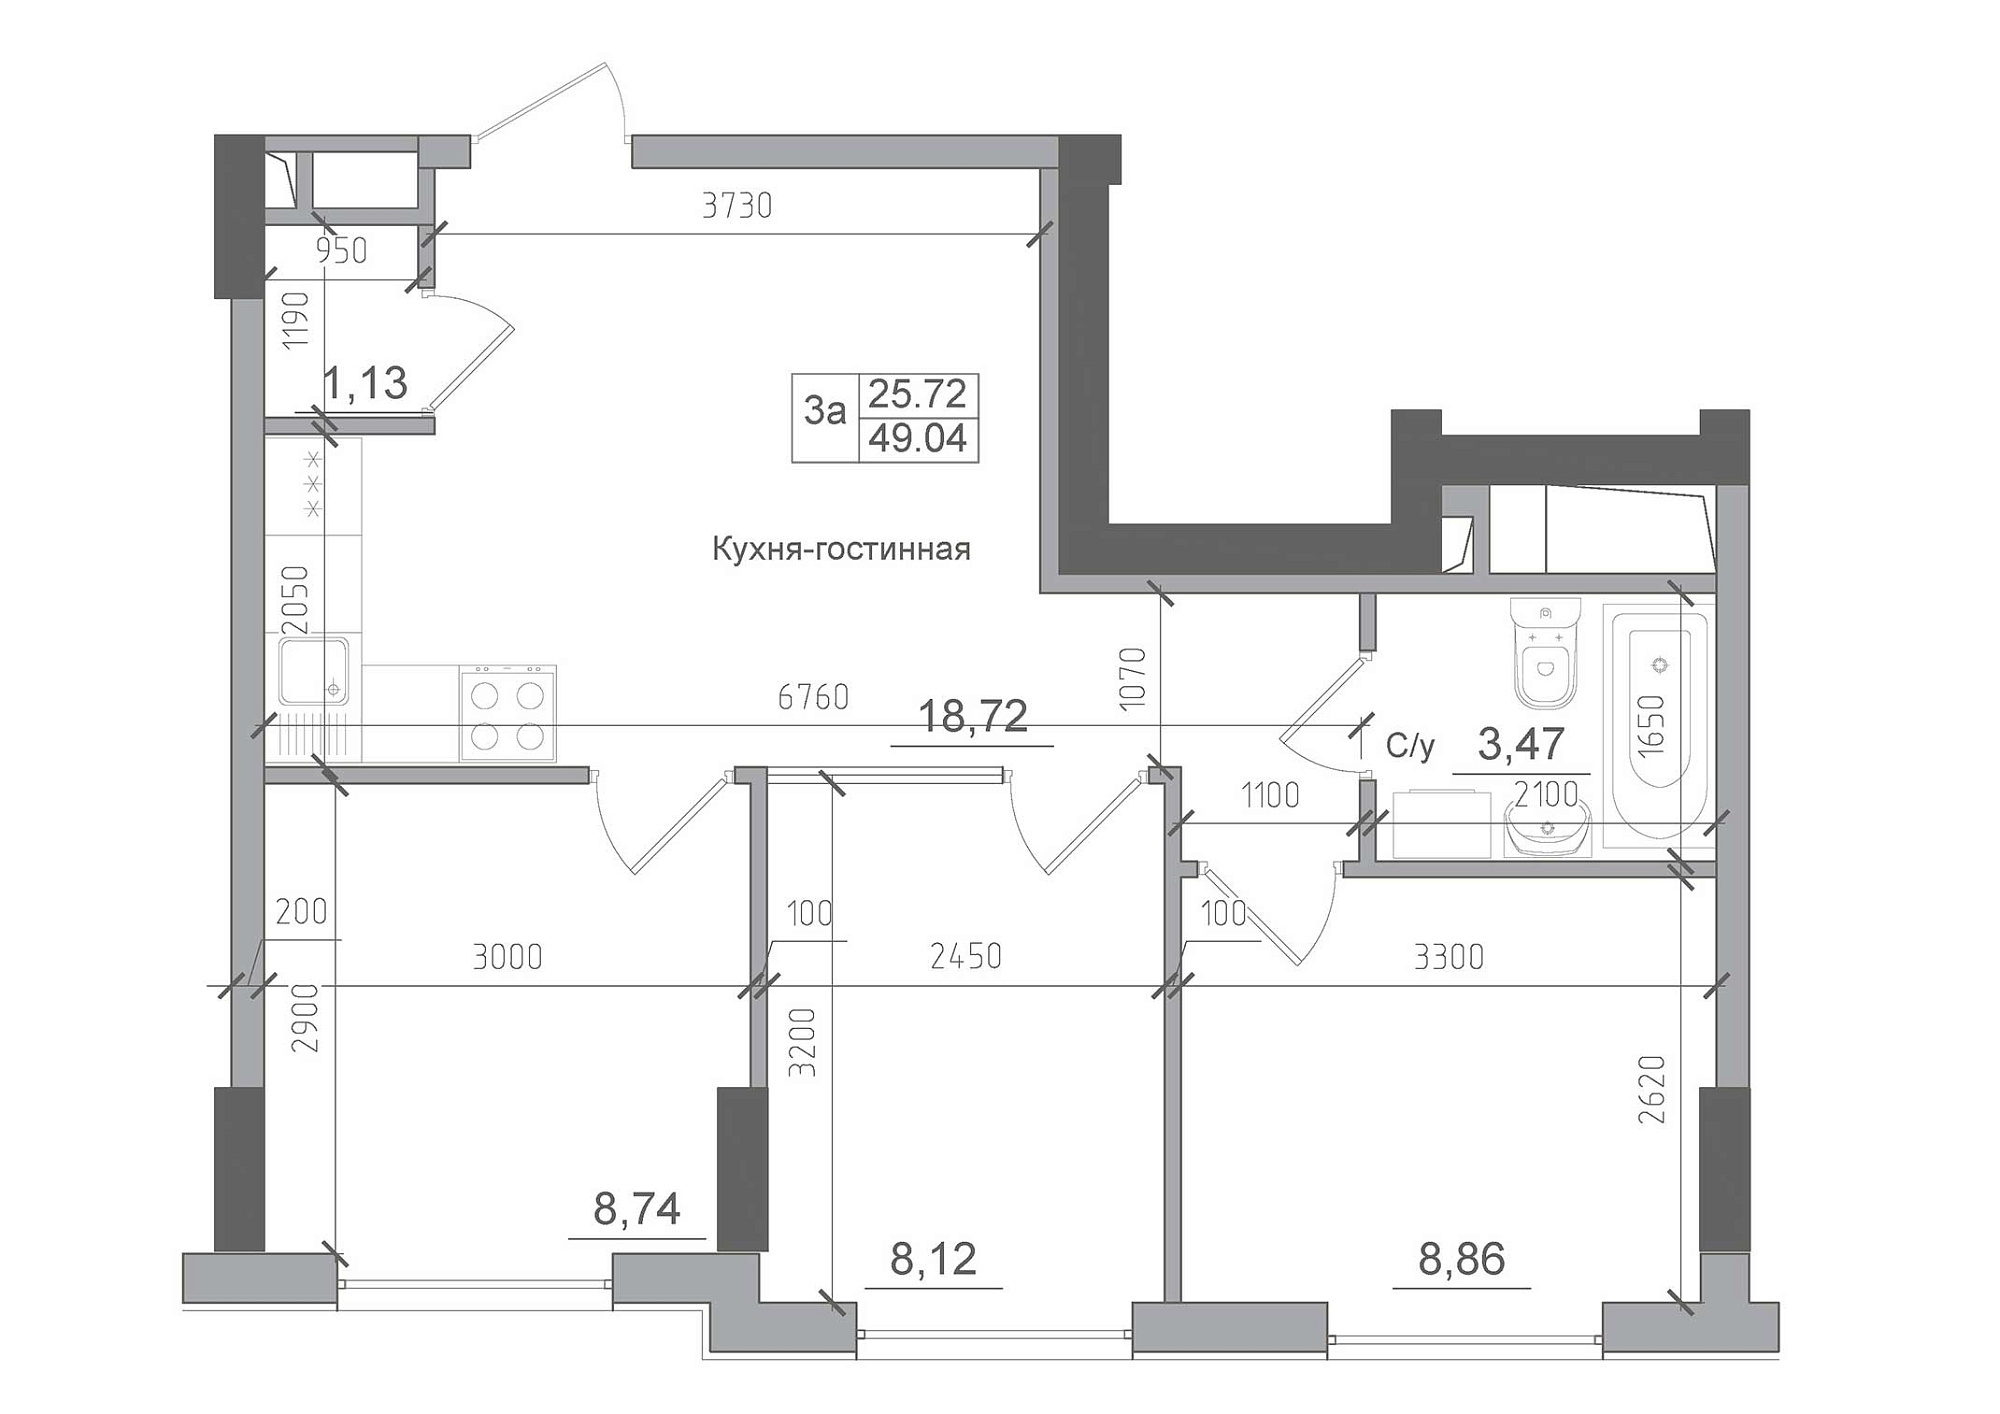 Планировка 3-к квартира площей 49.04м2, AB-22-06/00007.